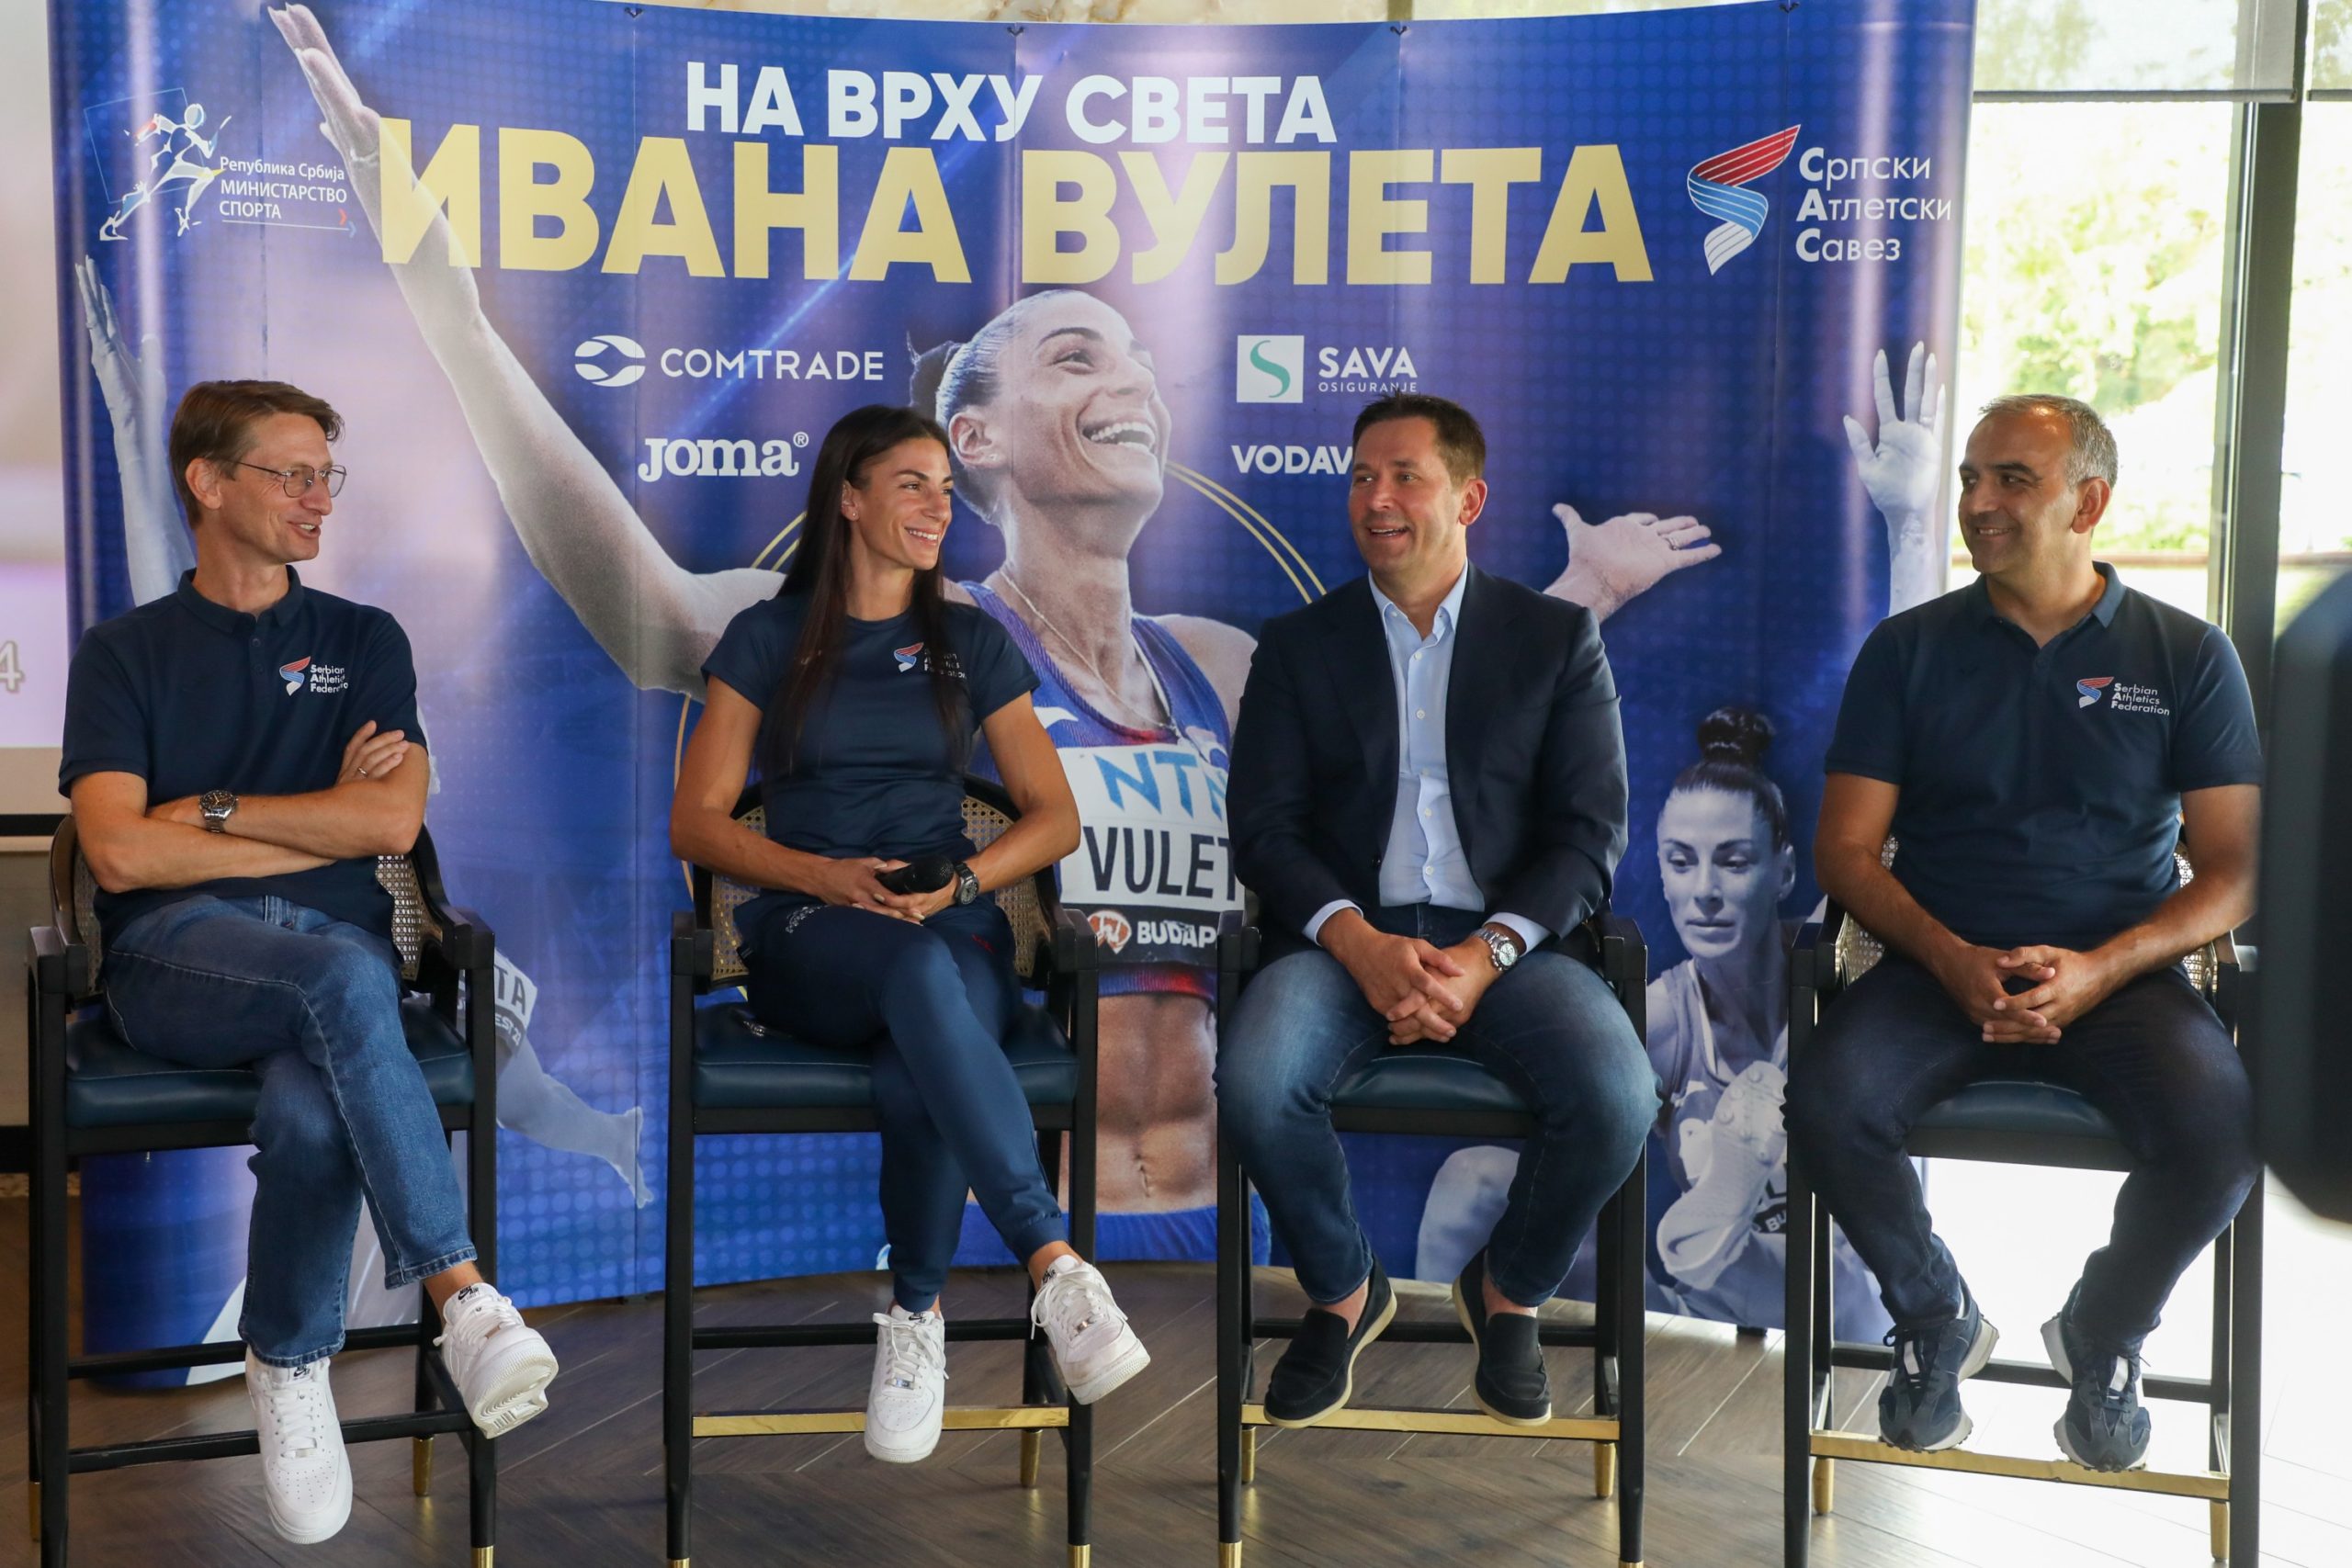 Svetska šampionka Ivana Vuleta u Beogradu